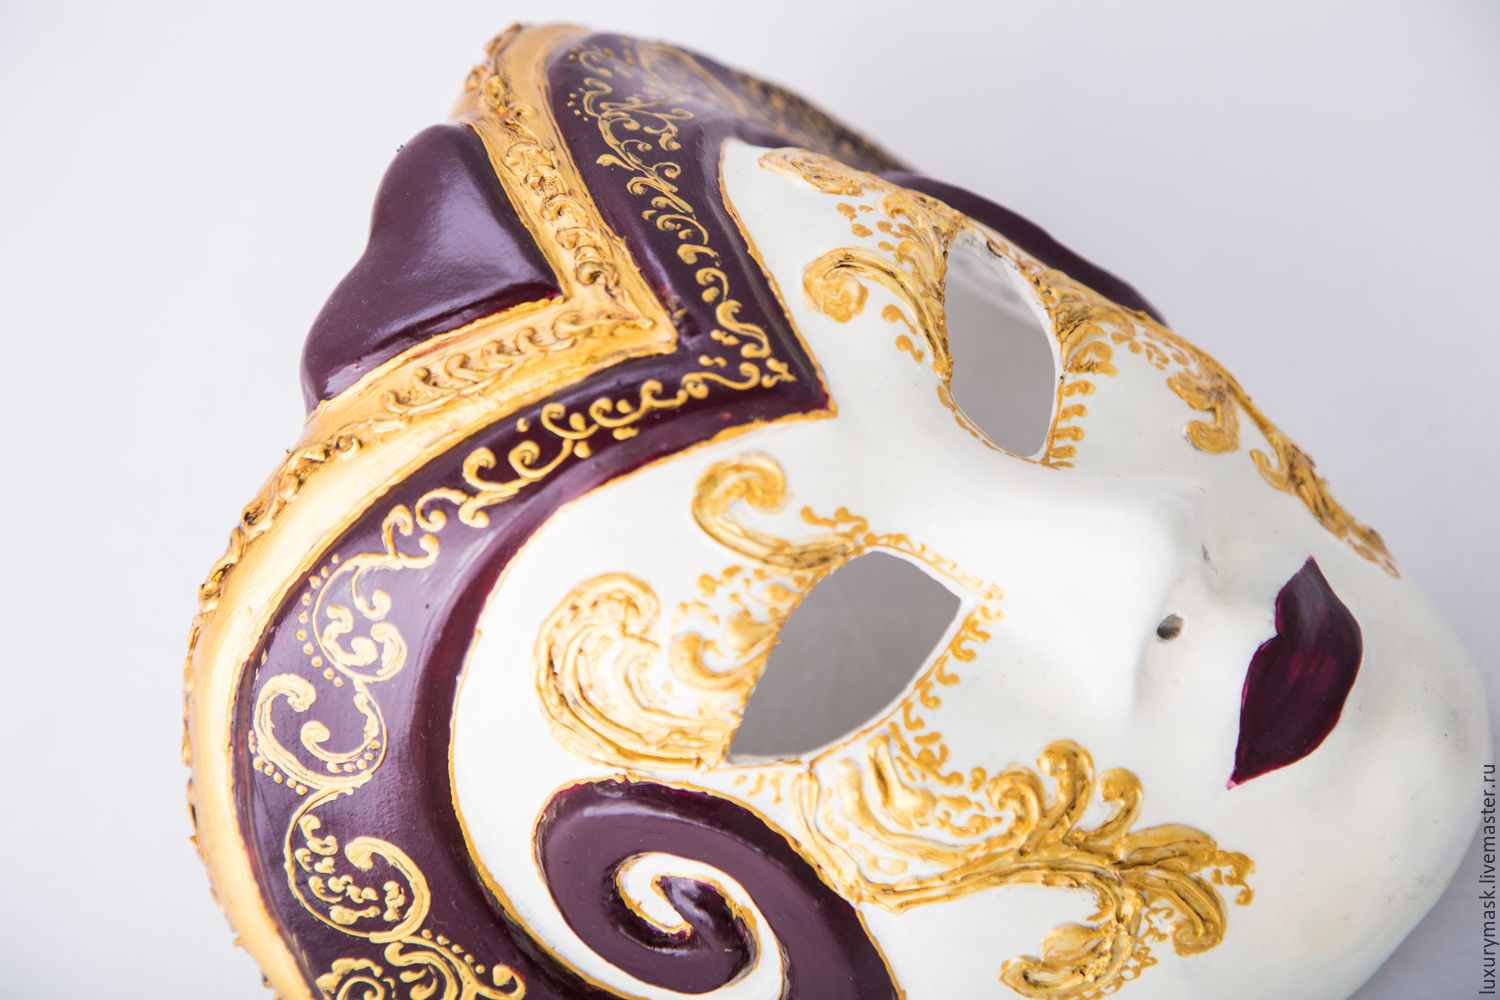 Петербургская маска. Роспись венецианских масок. Магазин венецианских масок. Конфеты карнавальная маска. Интерьерные карнавальные маски.